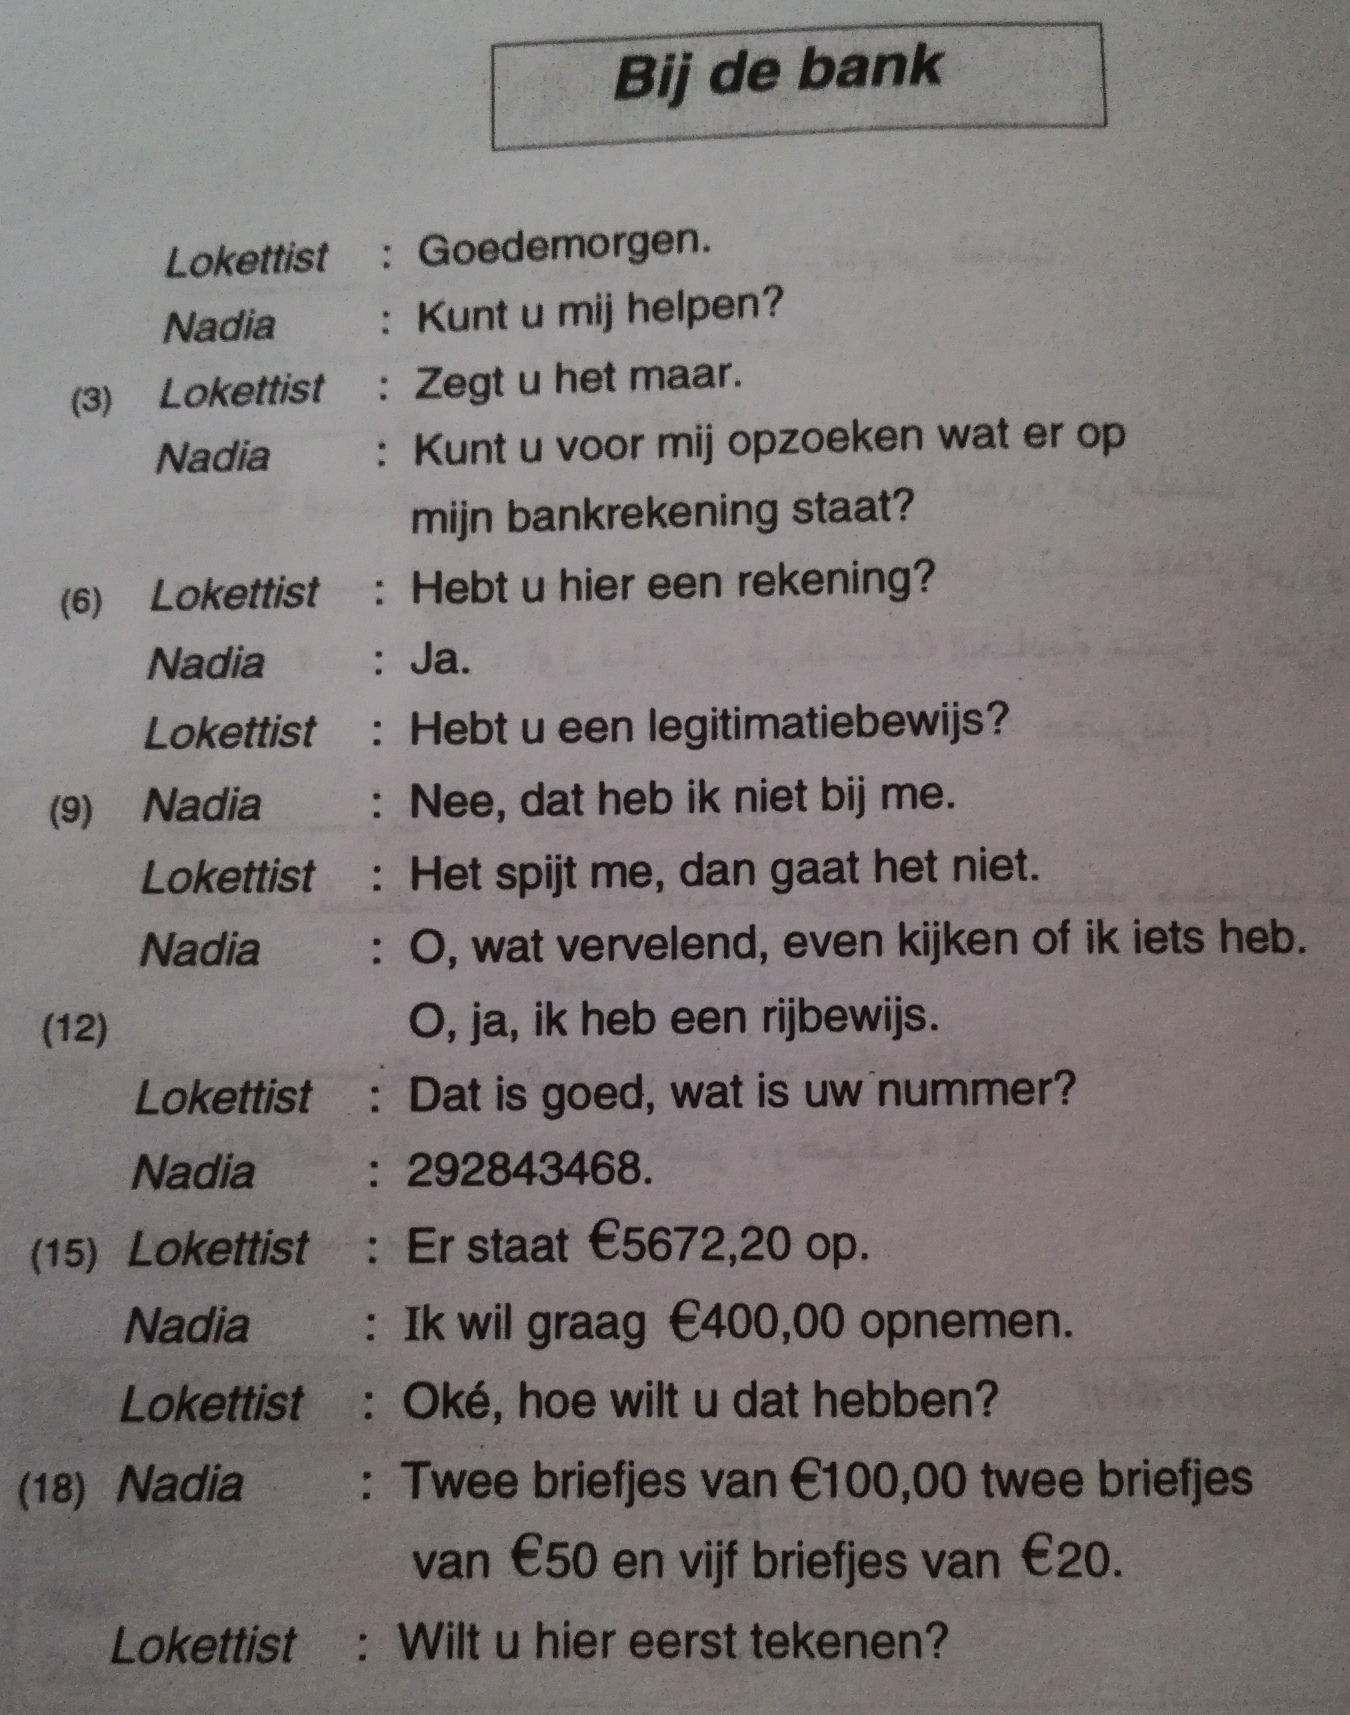 محادثة في البنك تعلم اللغة الهولندية بسهولة (مترجم )Bij de bank